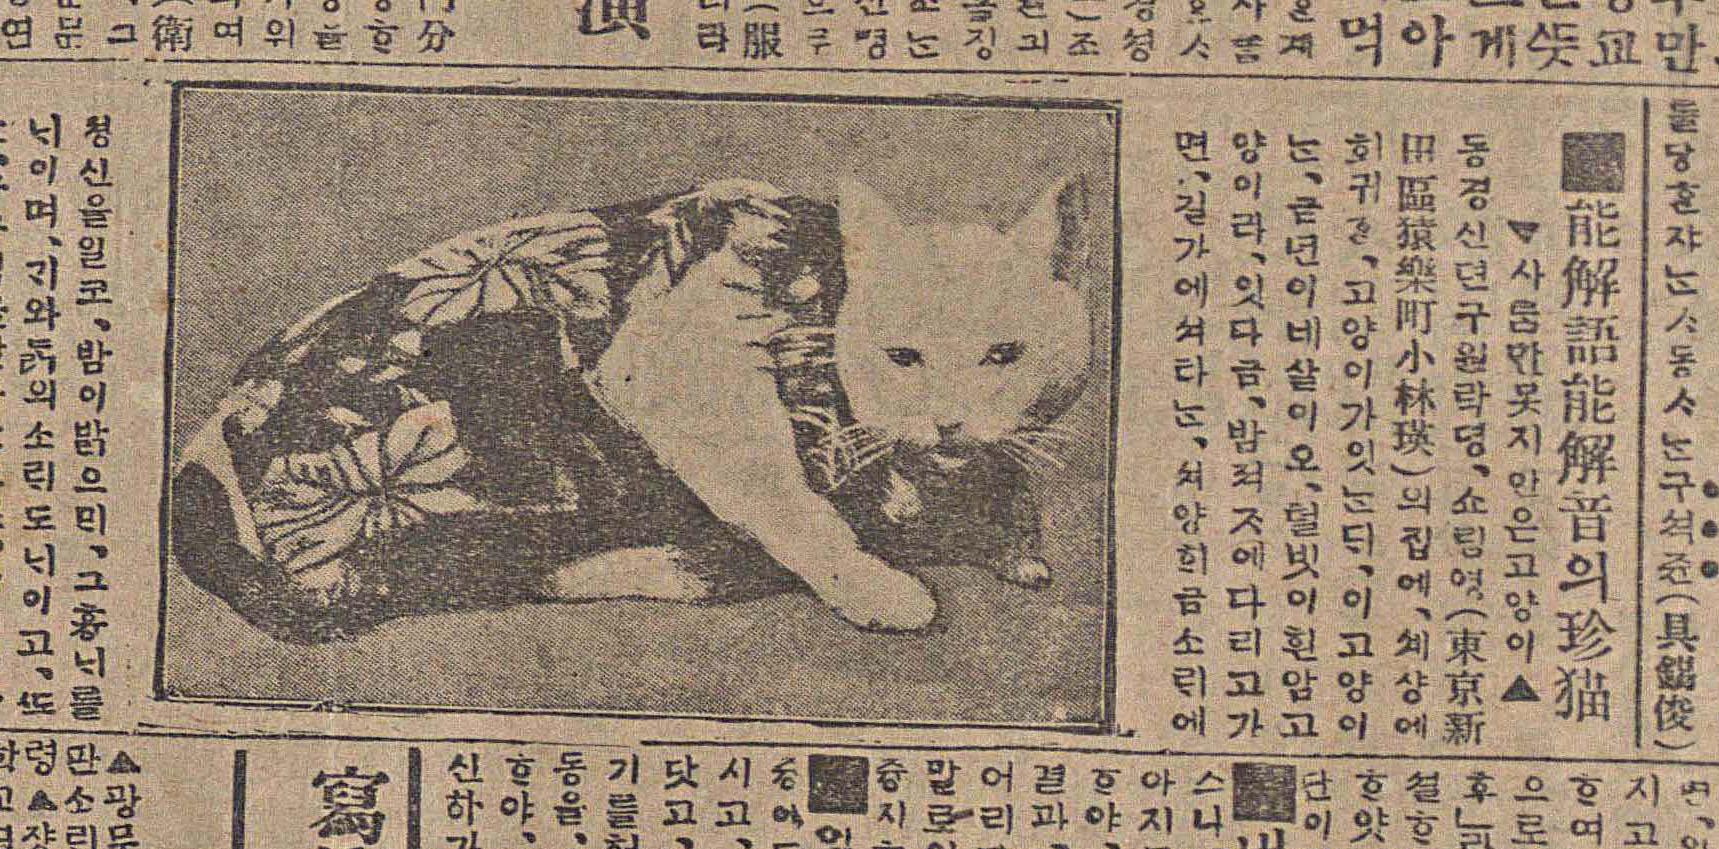 고양이의 귀여움을 전파했던 과거의 신문 기사들 커버이미지